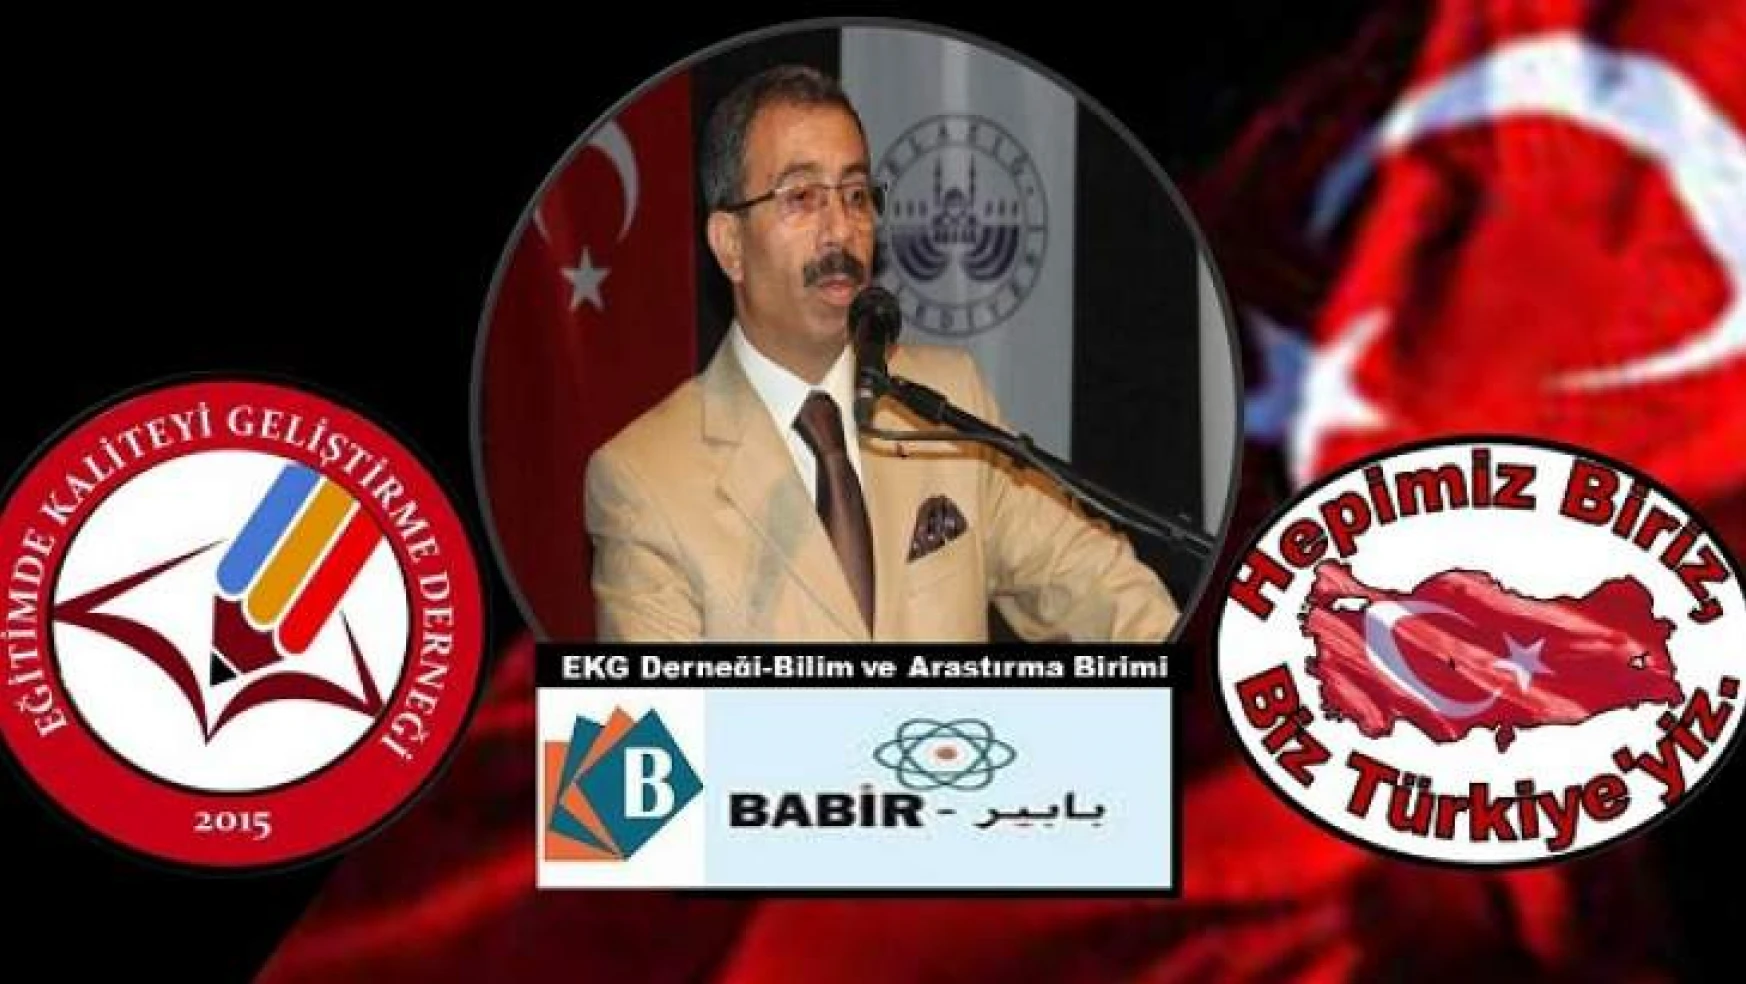 EKG Derneği Başkanı Akgün'den 'Kurban Bayramı' Mesajı